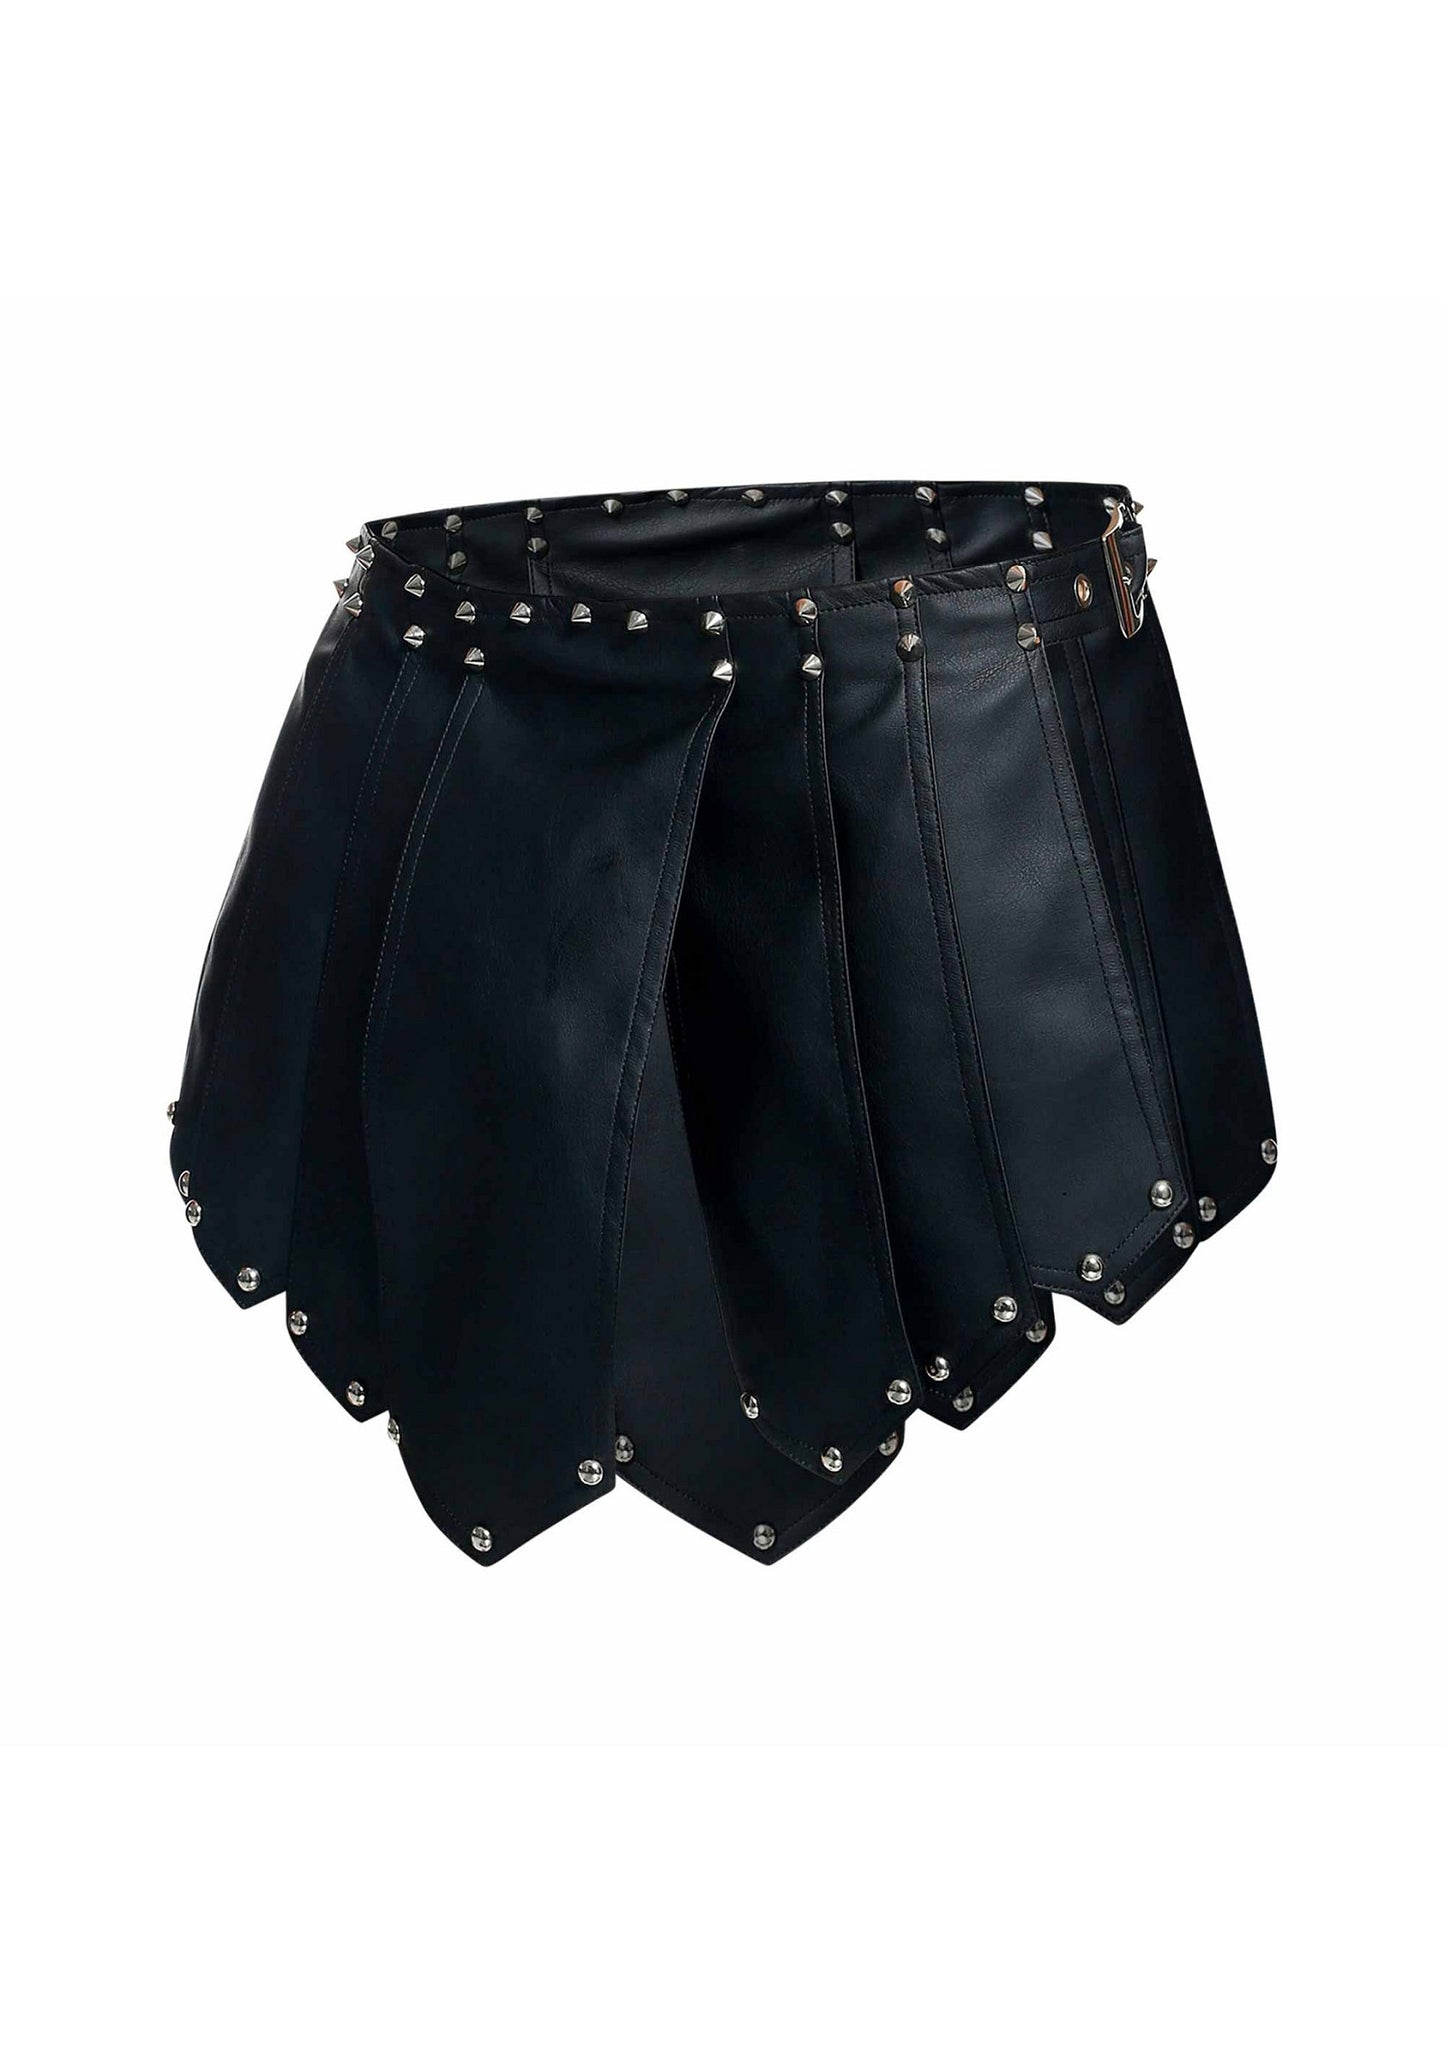 MOB Eroticwear Dngeon Roman Skirt BLACK O/S - 8